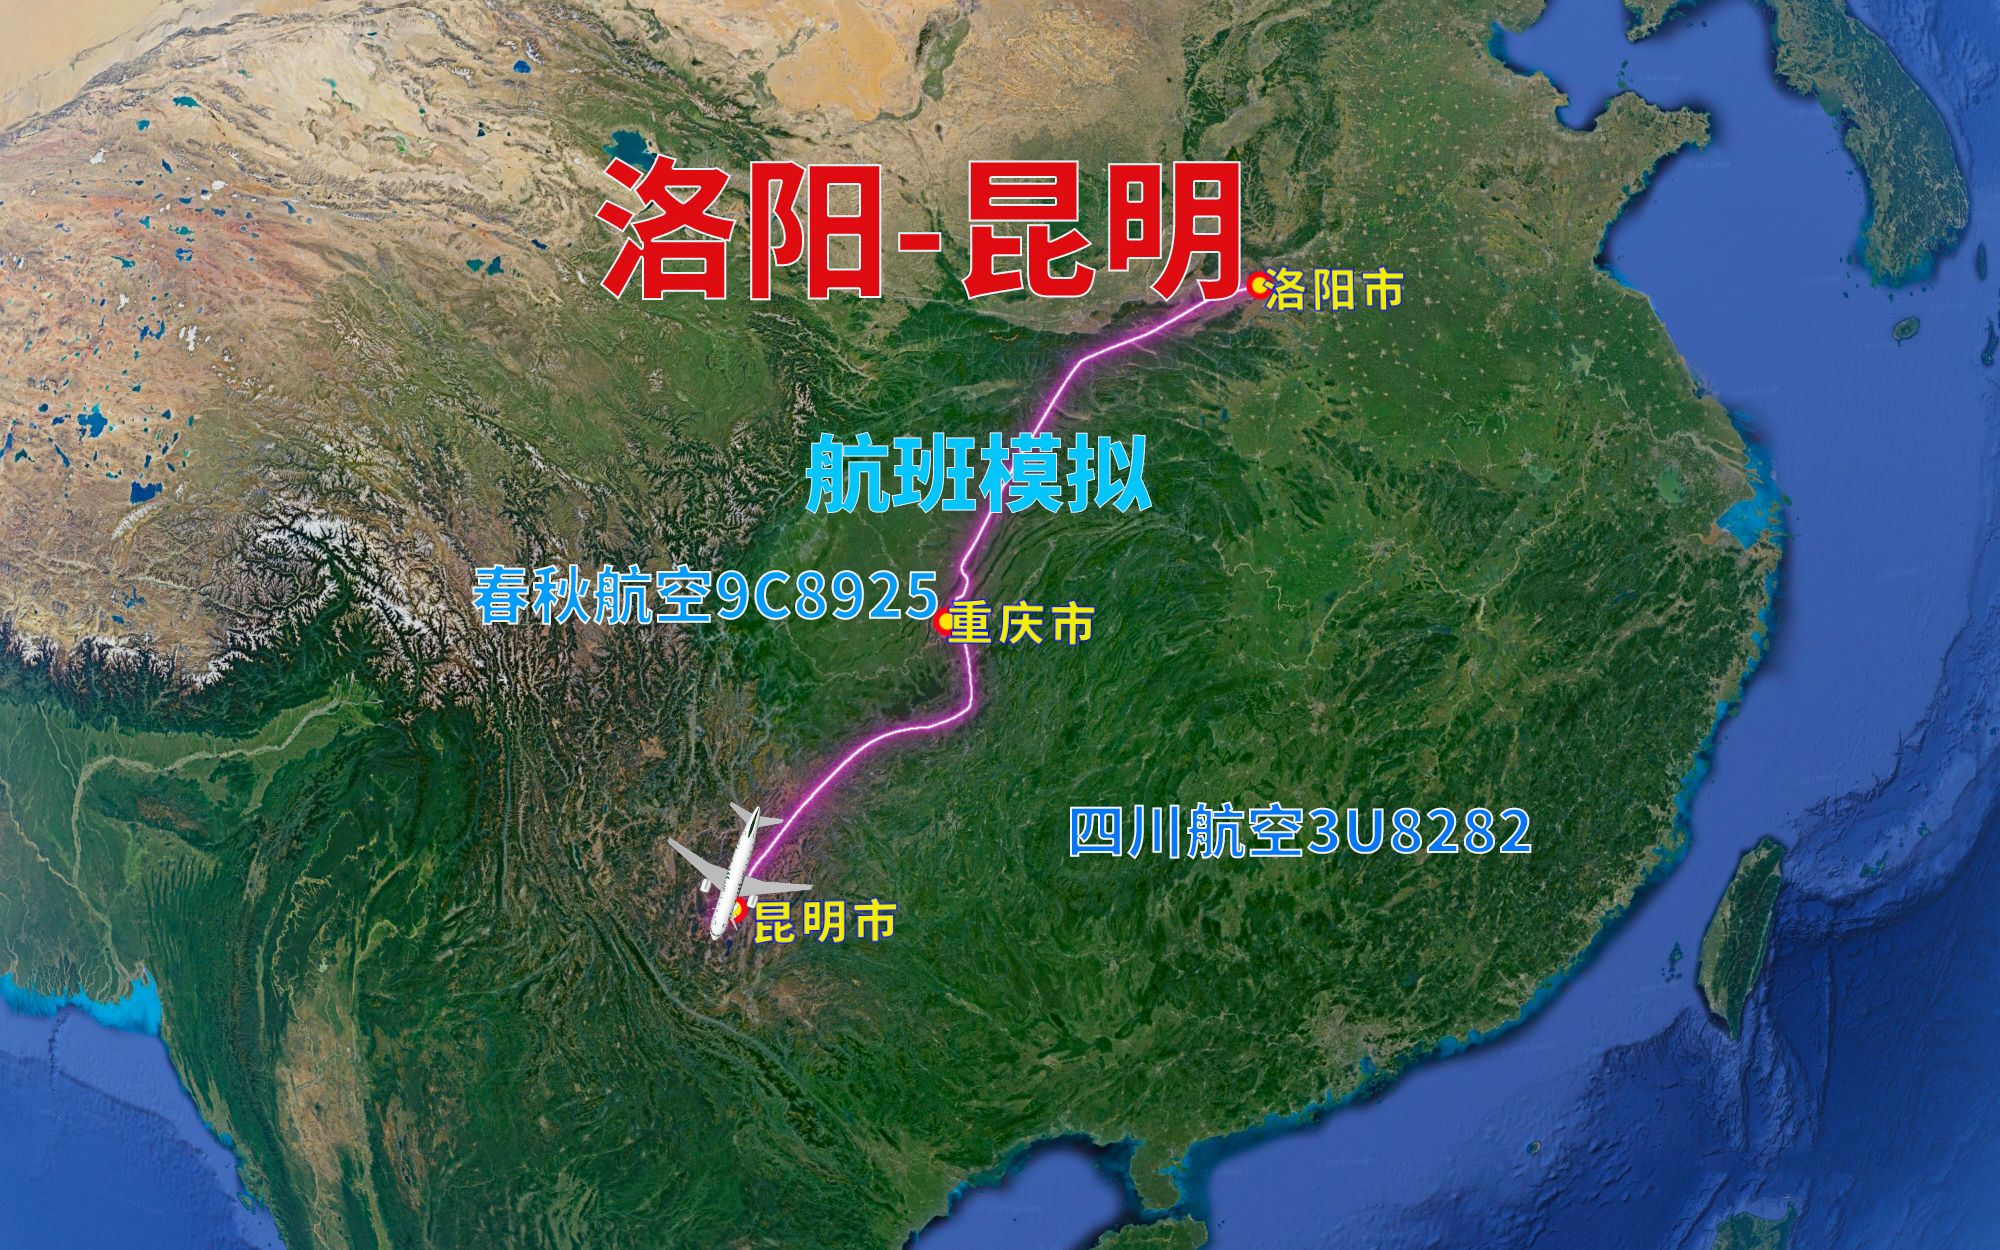 模拟洛阳飞昆明航班重庆转机航程1690千米飞行2小时38分